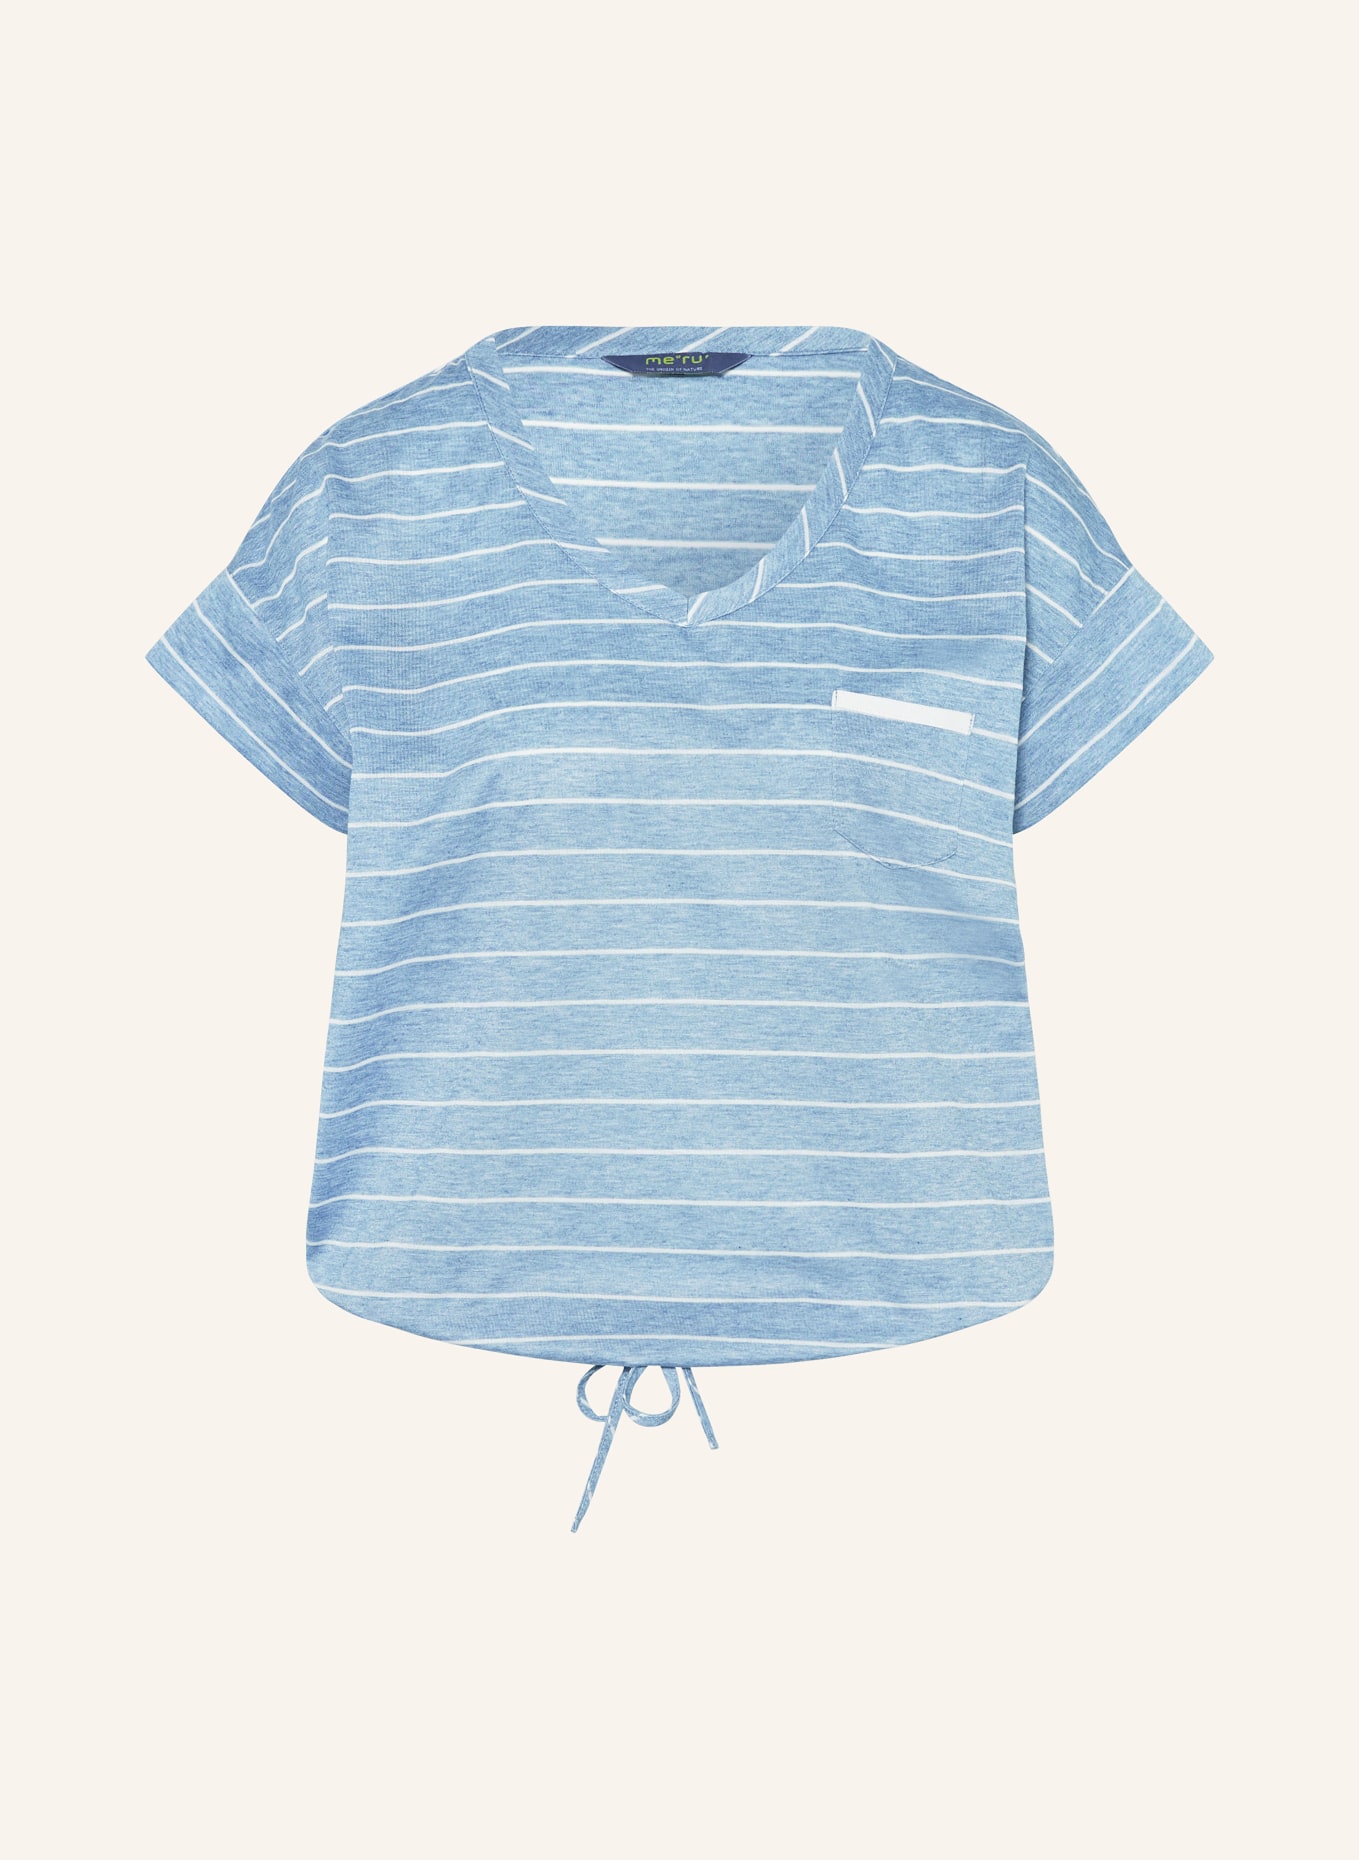 me°ru' T-Shirt WINDHOEK, Farbe: HELLBLAU/ BLAU (Bild 1)